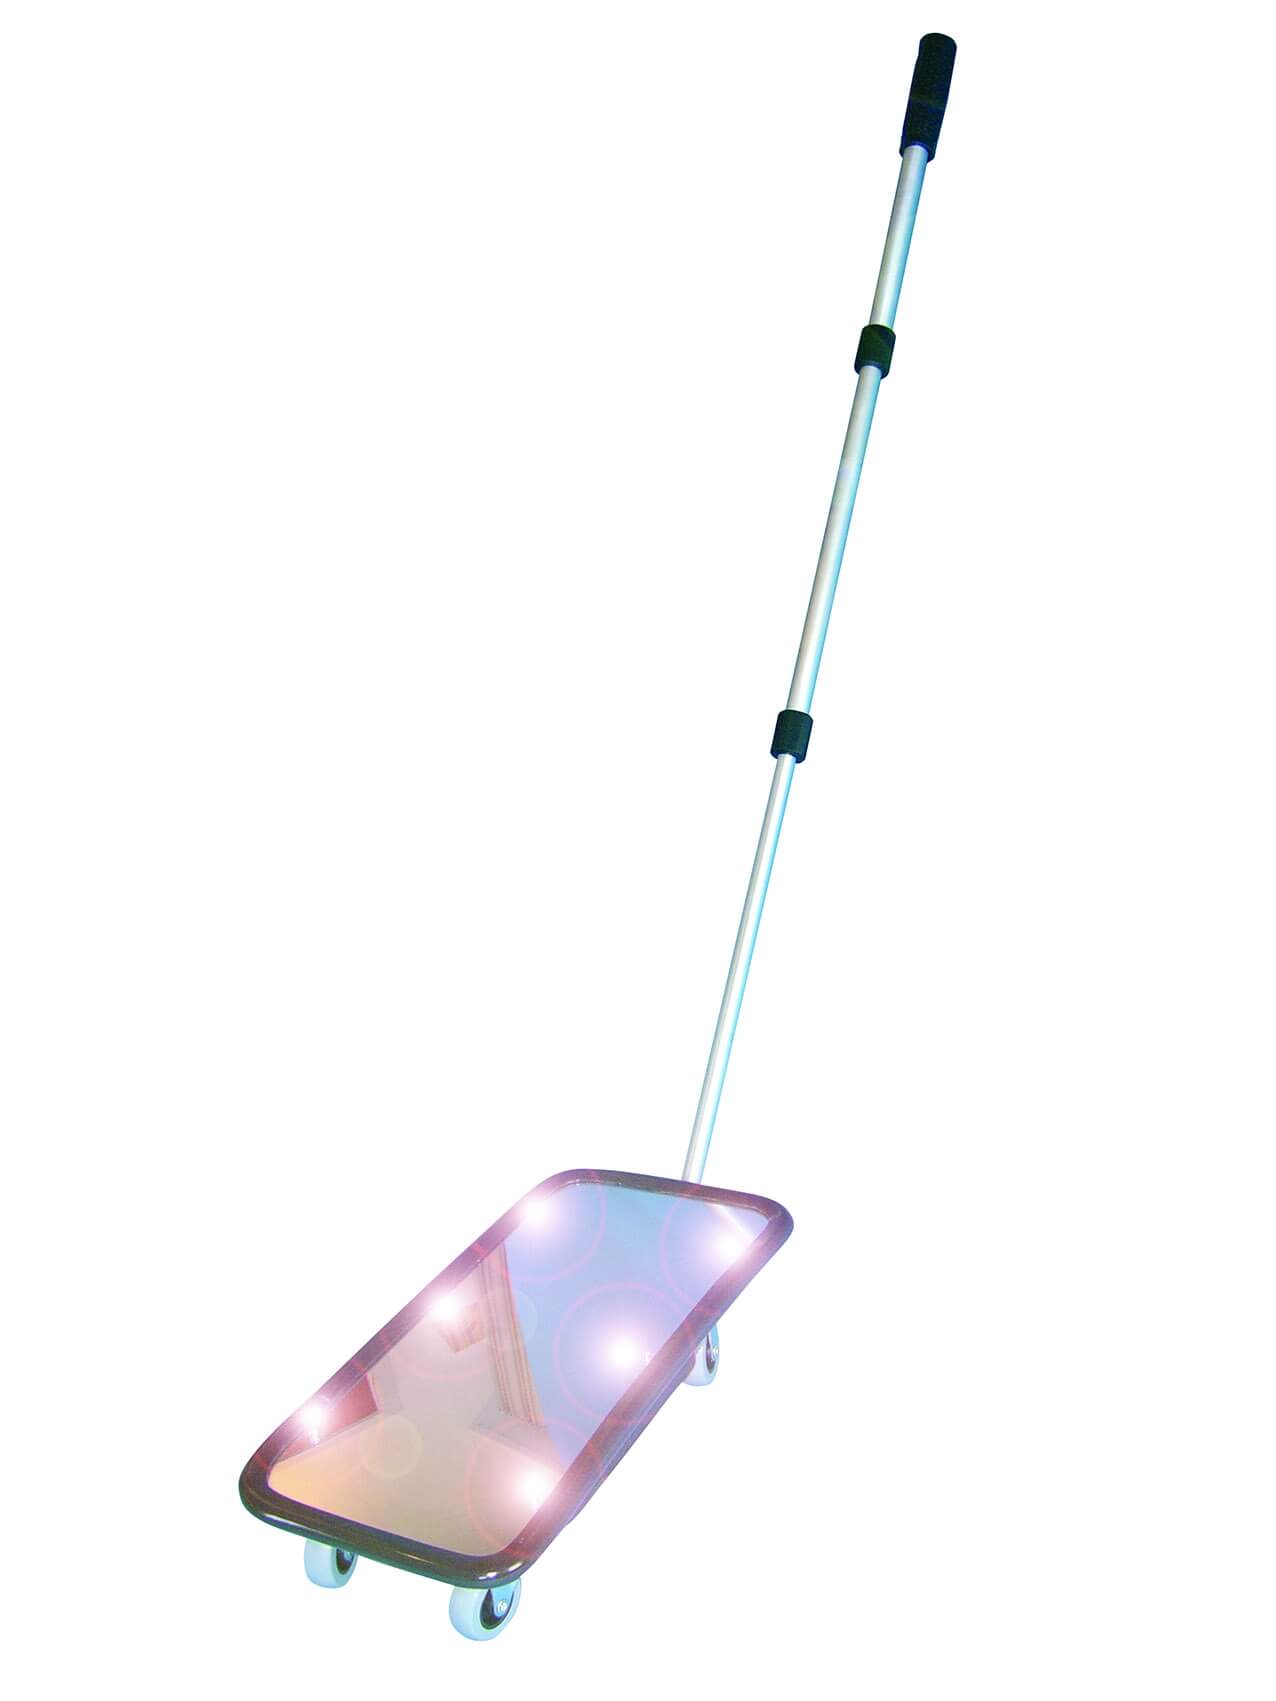 Inspektionsspiegel 20 × 40 cm, mit Rollenfüßen und Licht